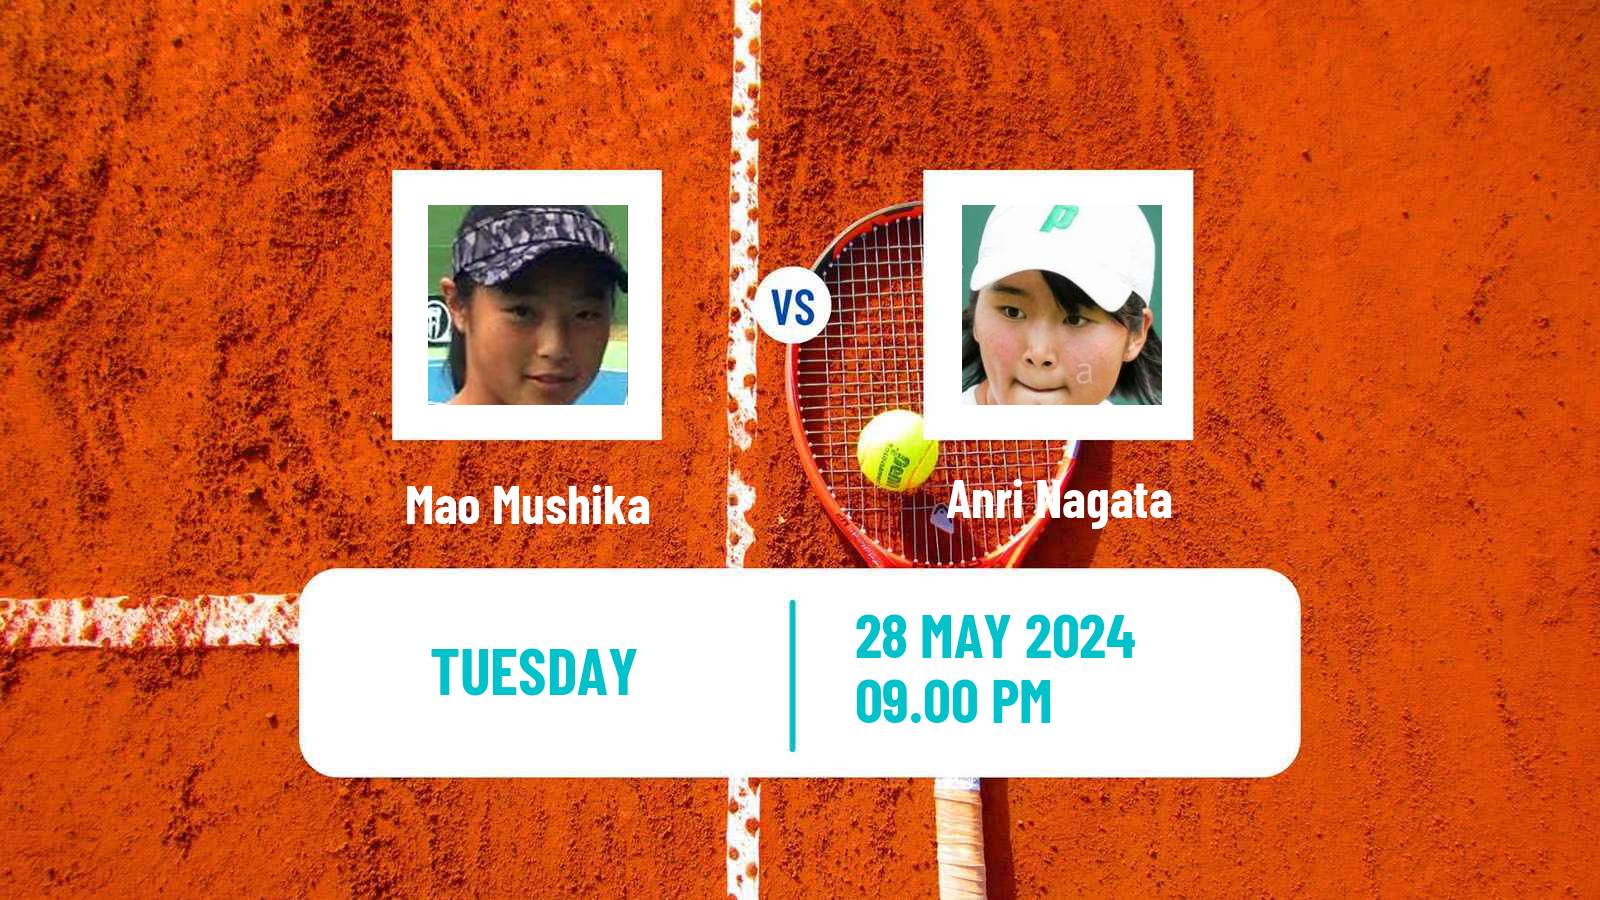 Tennis ITF W15 Tokyo Women Mao Mushika - Anri Nagata